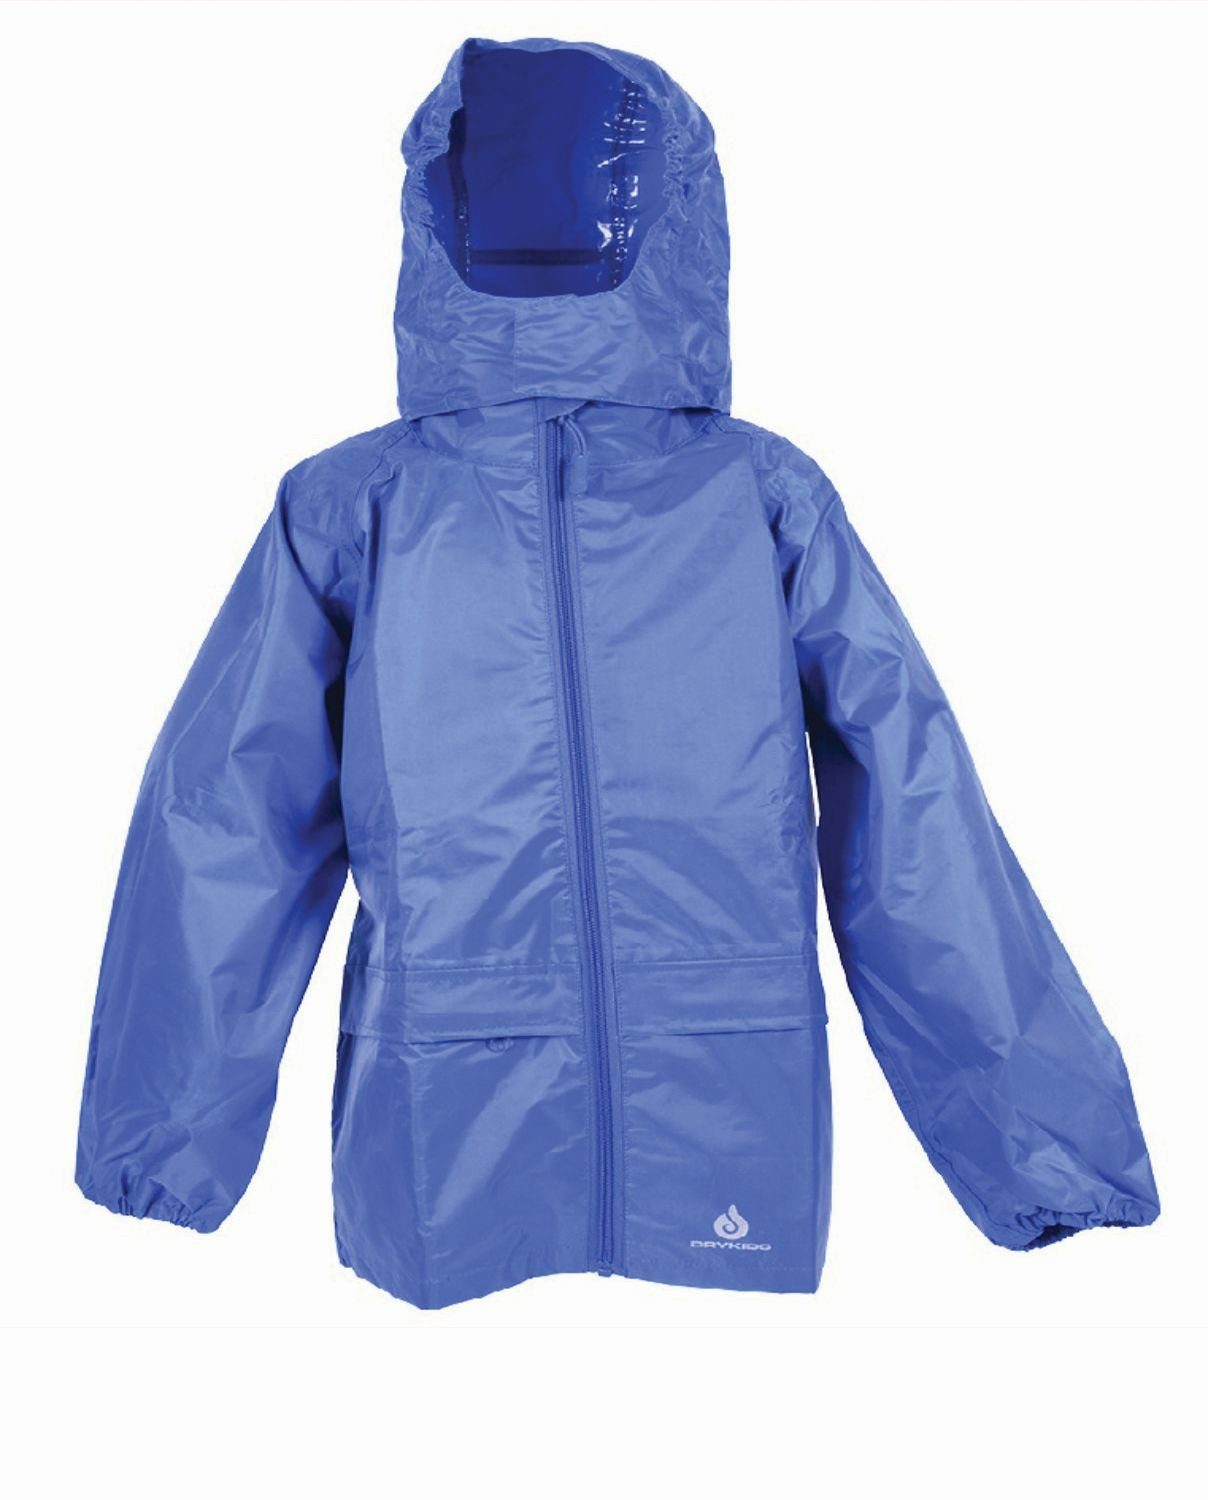 DRY KIDS Regenjacke Wasserdichte Jacke für Kinder, verschweißte Nähte Größe 146 - 152